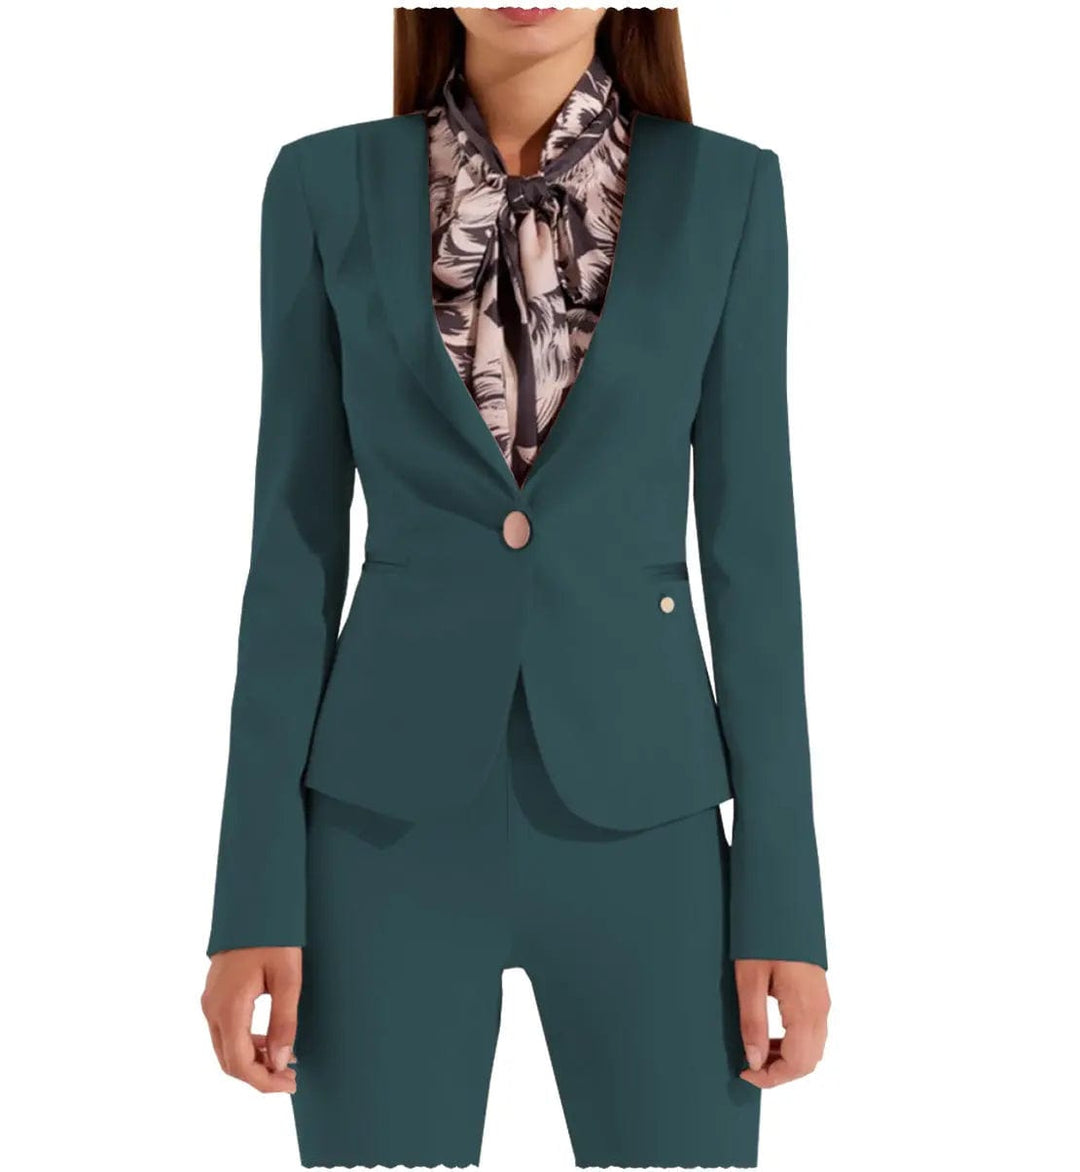 solovedress Business Flat Shawl Lapel 2 Pieces Women Suit